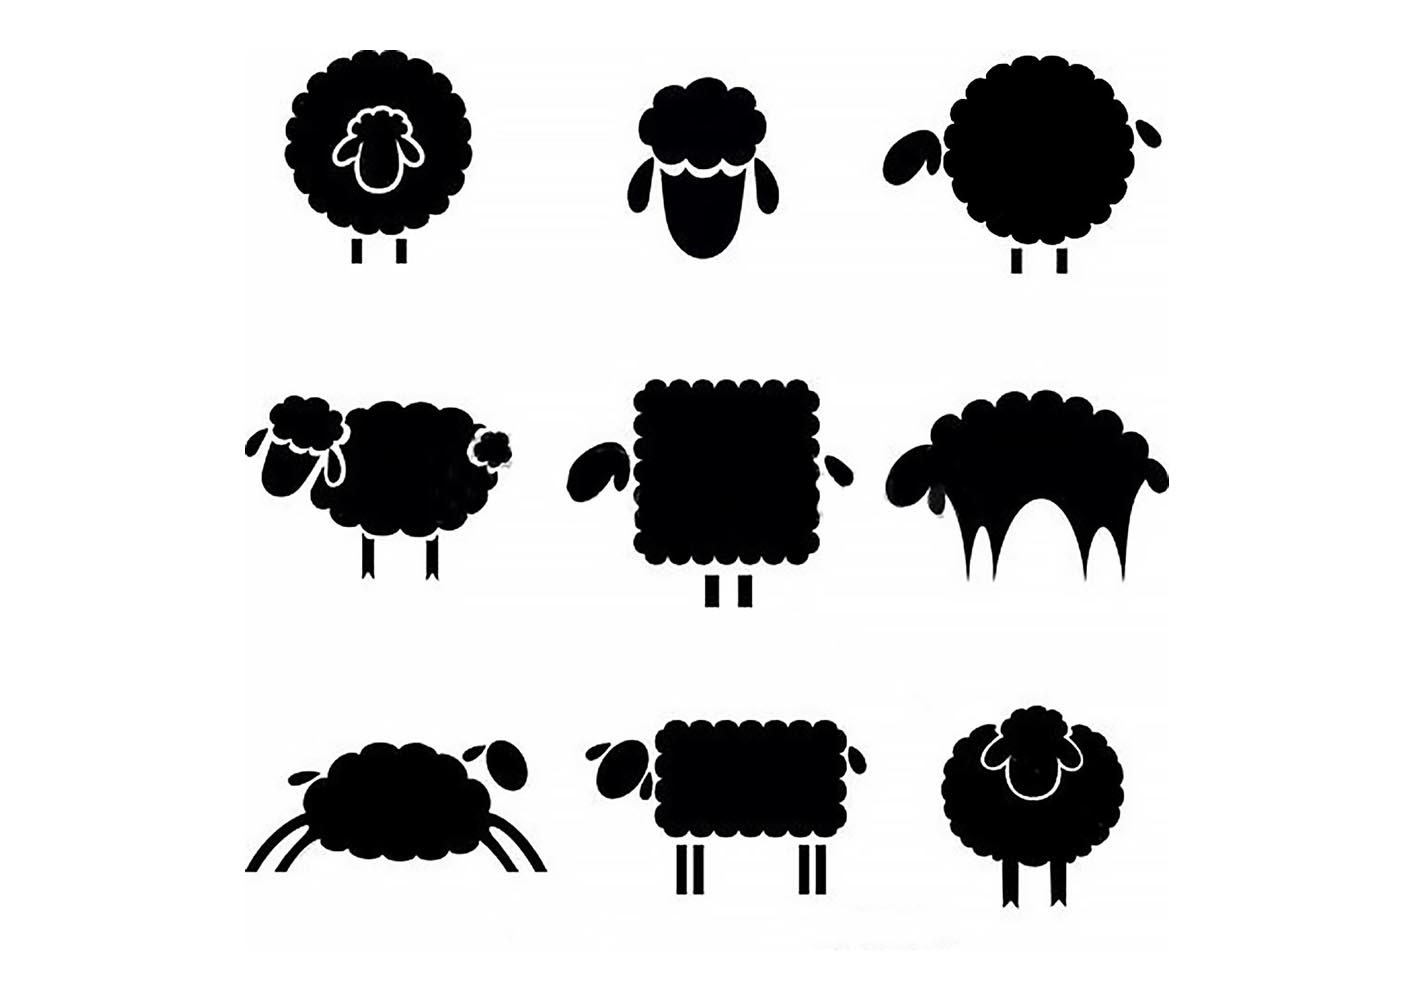 шаблон овечки для аппликации из ваты для детей 3